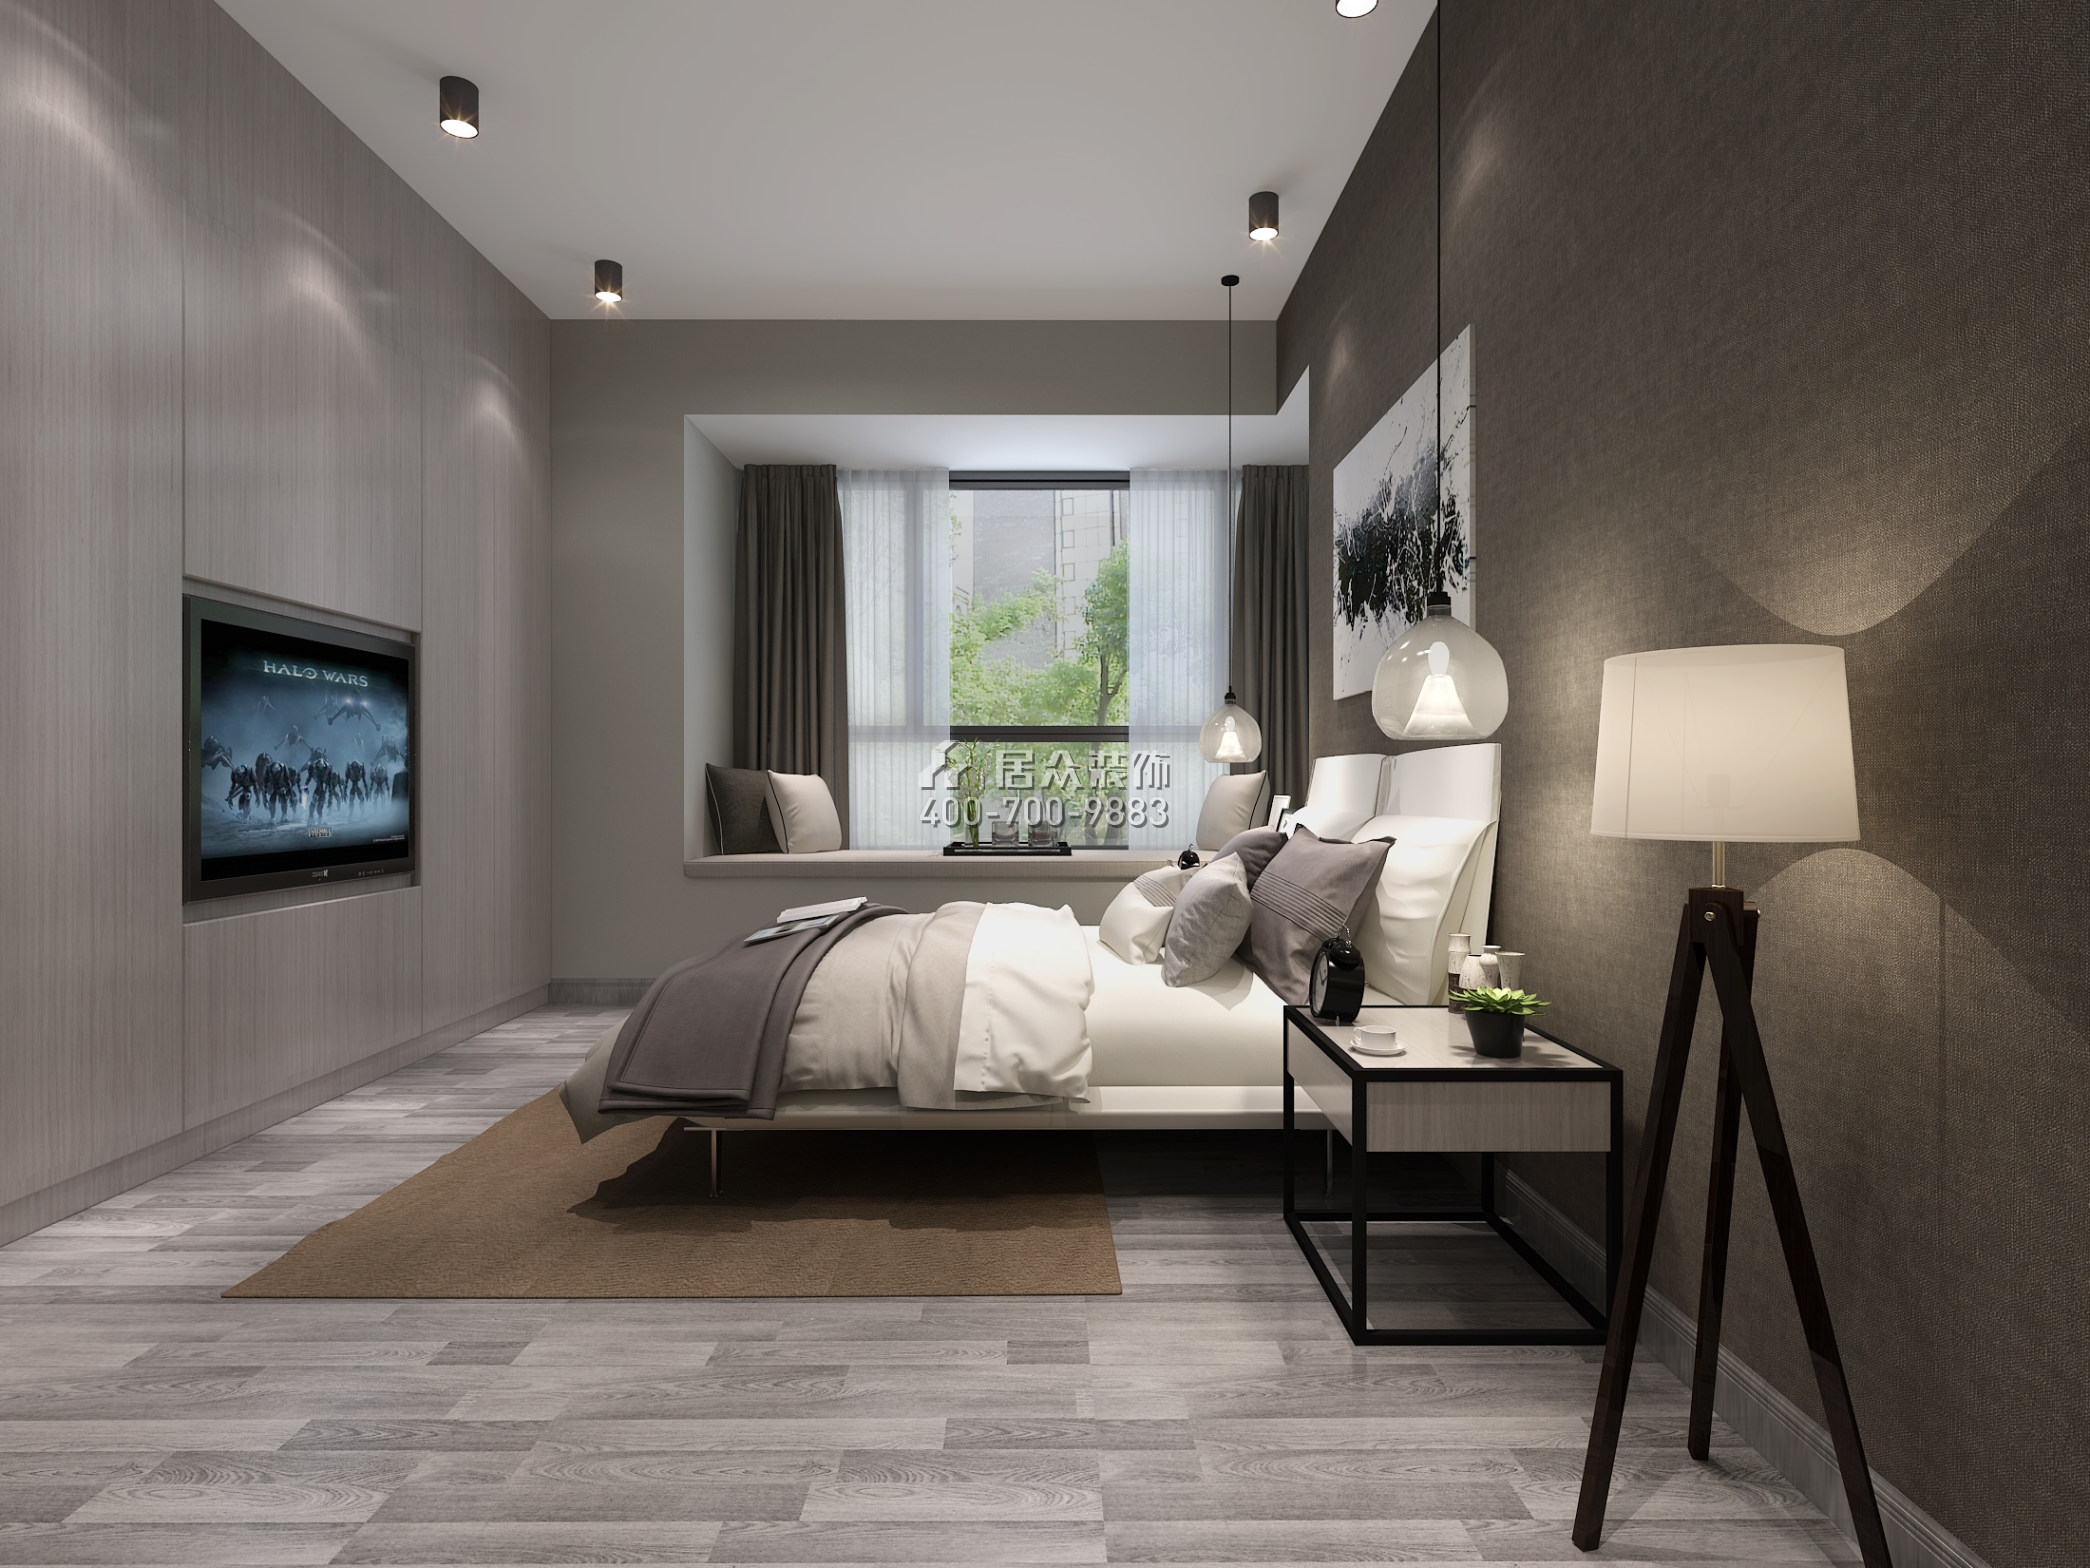 天悦湾143平方米现代简约风格平层户型卧室kok电竞平台效果图